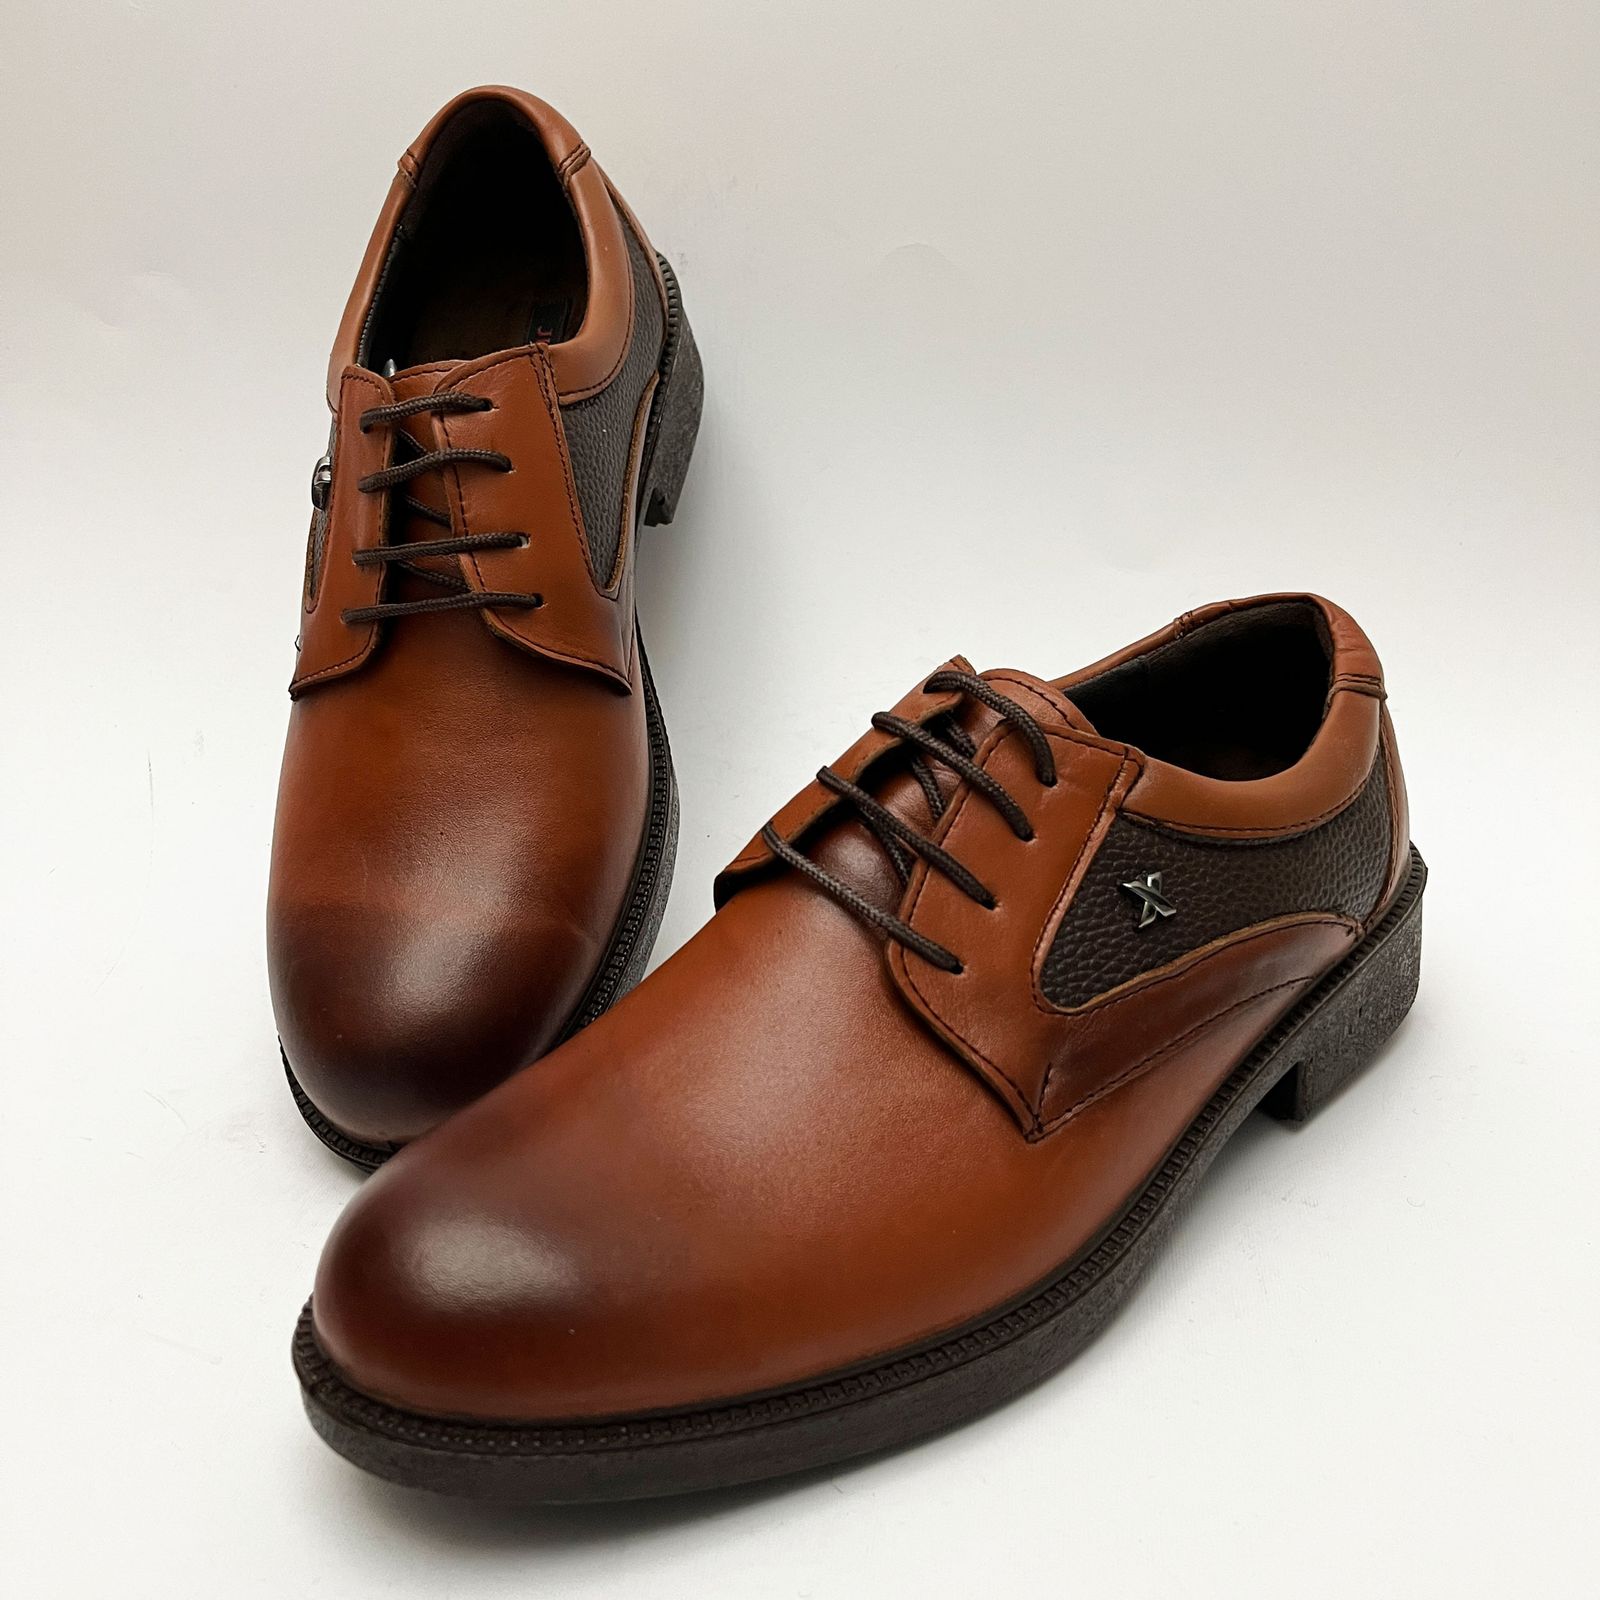 کفش مردانه مدل چرم پوش کد 4054 -  - 8